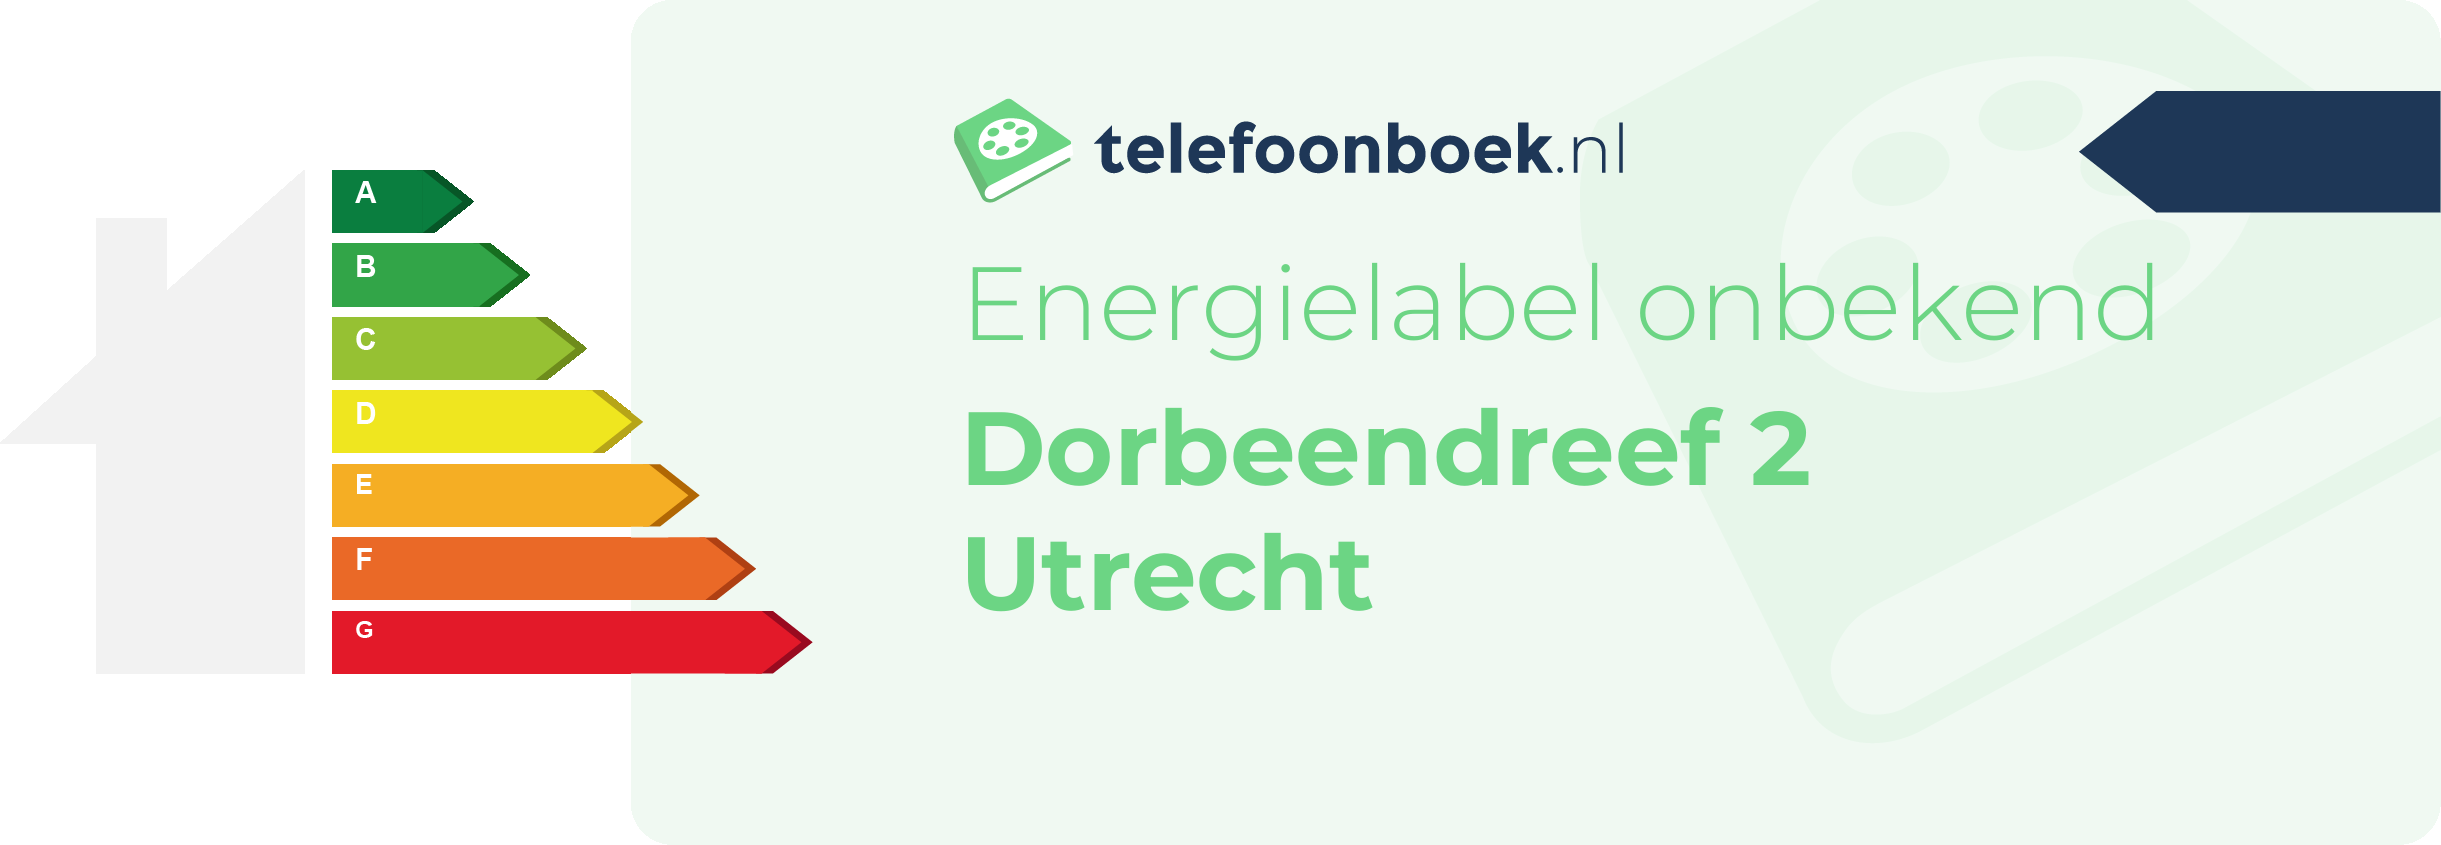 Energielabel Dorbeendreef 2 Utrecht